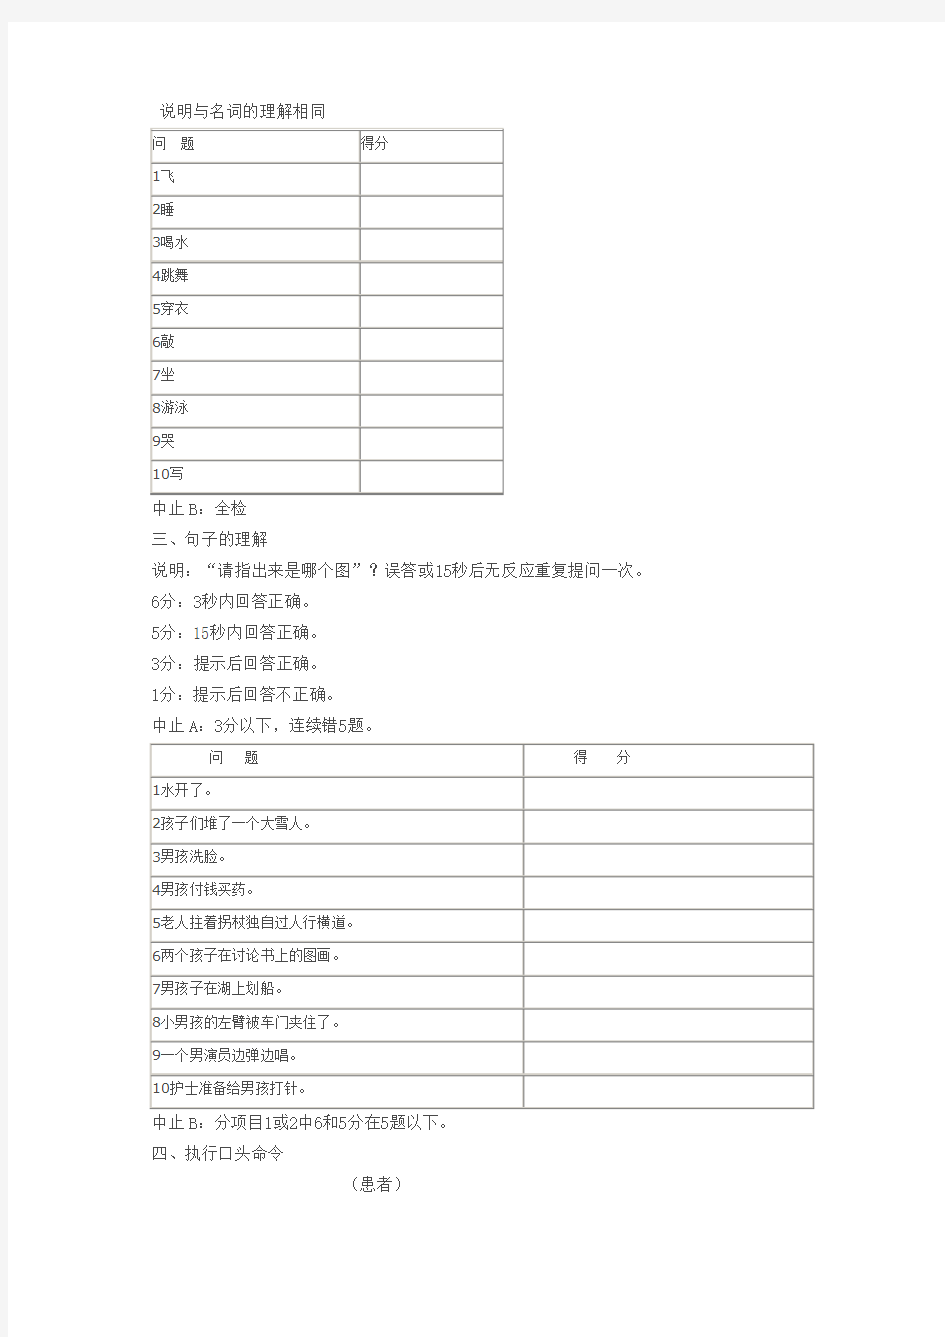 中国康复研究中心汉语标准失语症检查表